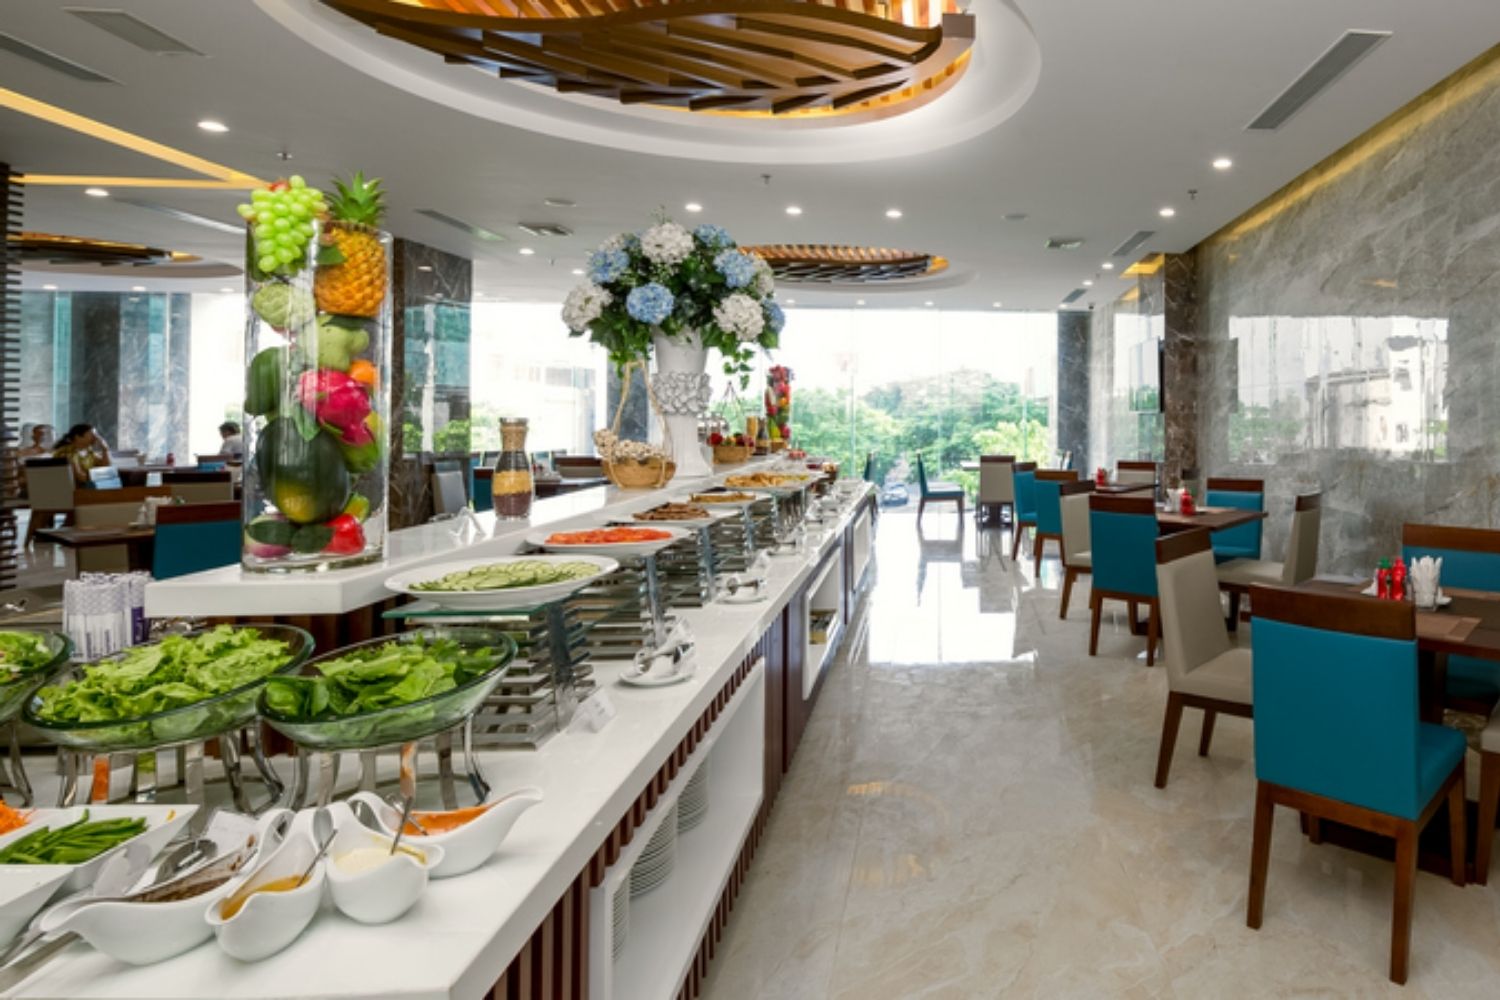 Đến Aria Hotel tận hưởng đẳng cấp khách sạn 4 sao bậc nhất tại Đà Nẵng 16